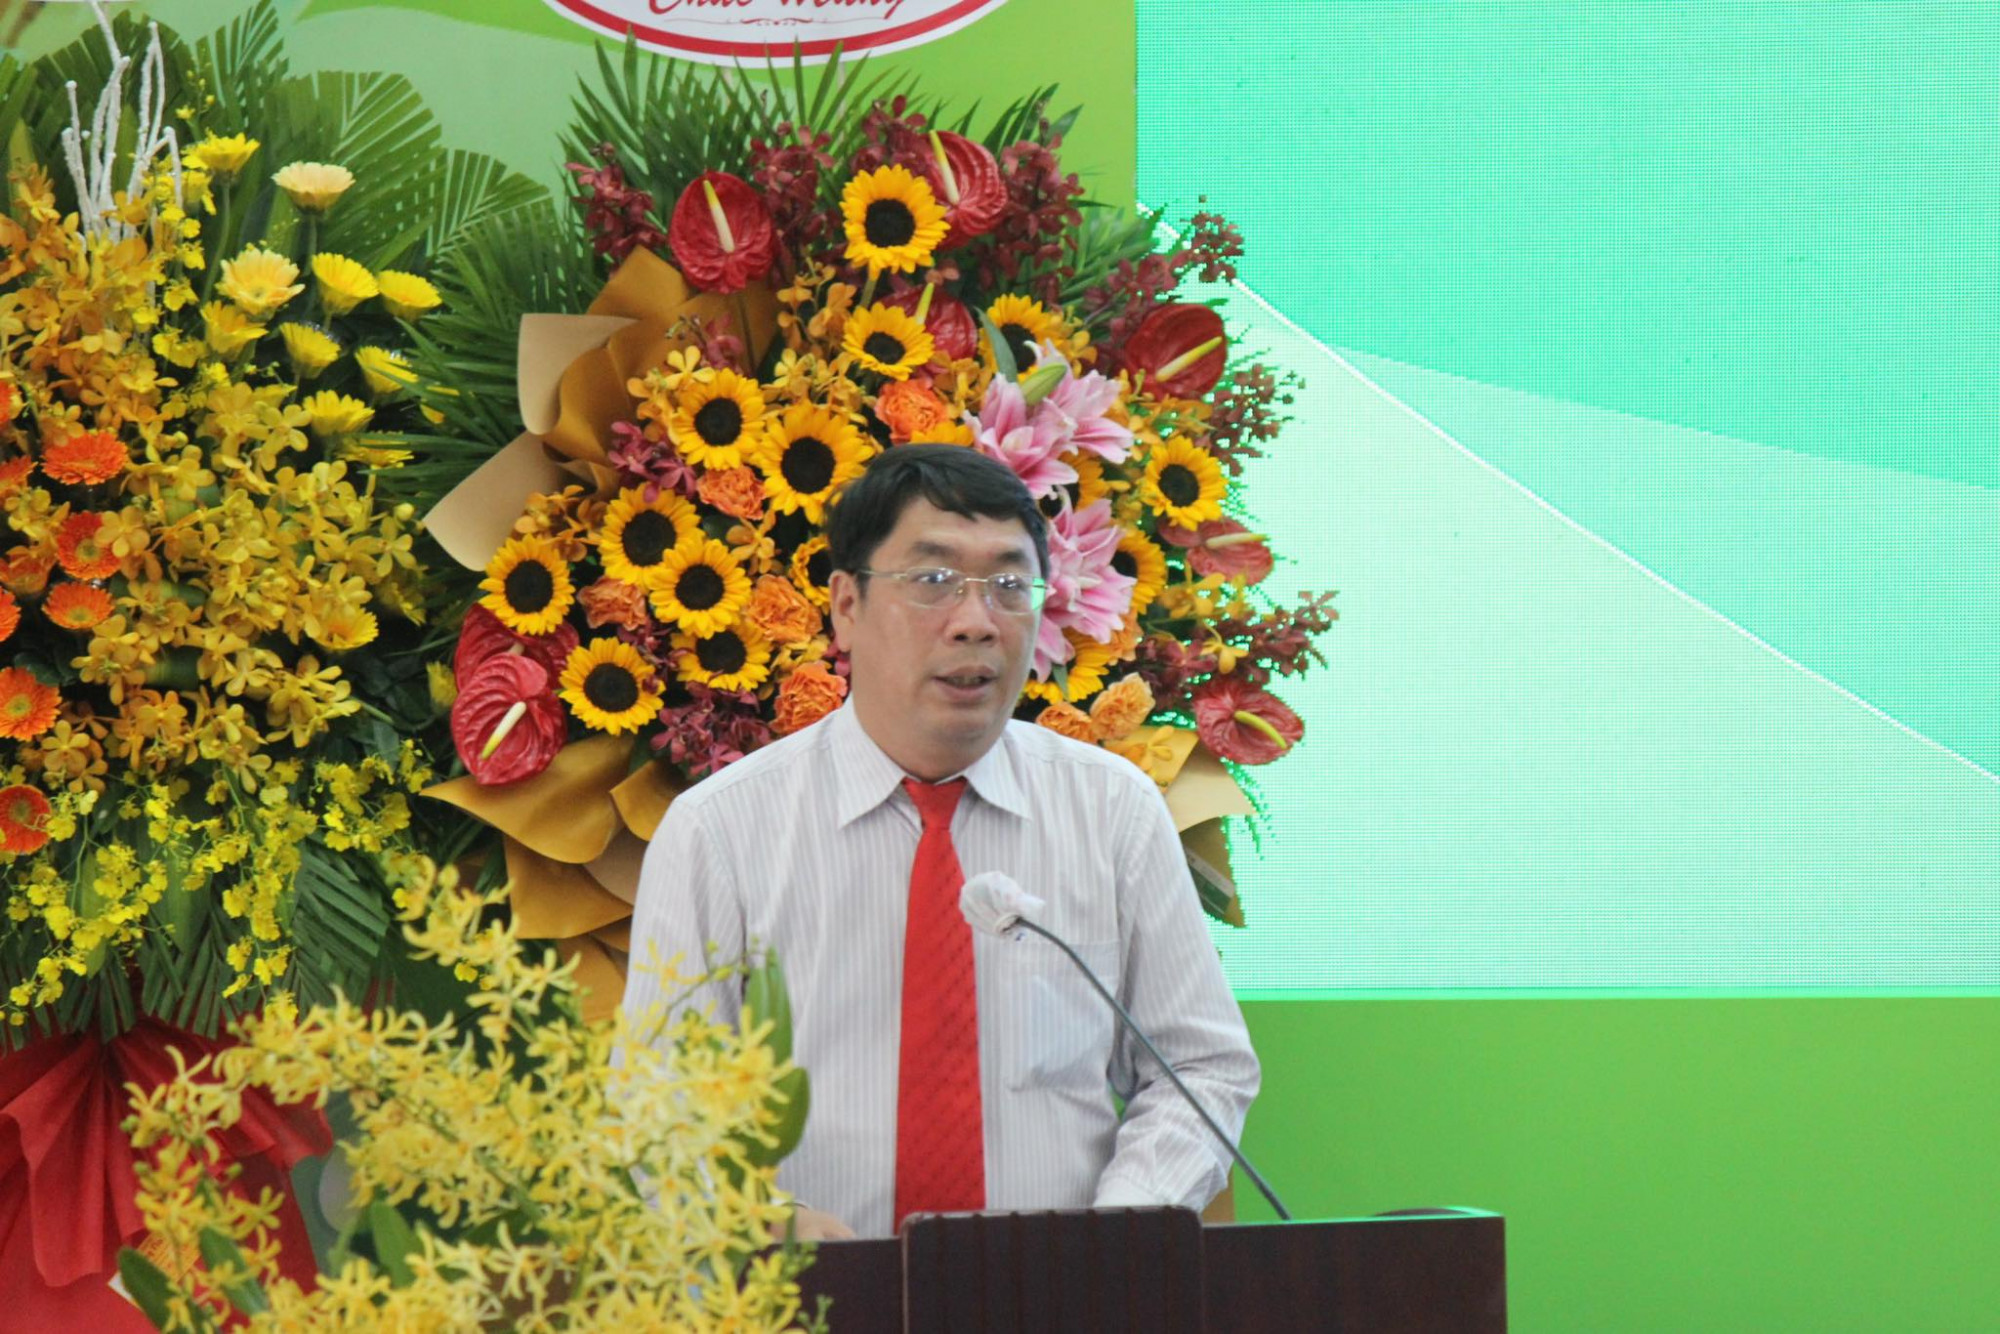 Ông Đinh Minh Hiệp cho biết, sau các hội thảo, ngành nông nghiệp TP sẽ có cơ sở đề xuất các cơ chế chính sách nhằm tháo gỡ khó khăn trong sản xuất và tiêu thụ SP nông nghiệp cho người dân, HTX và doanh nghiệp hiện nay